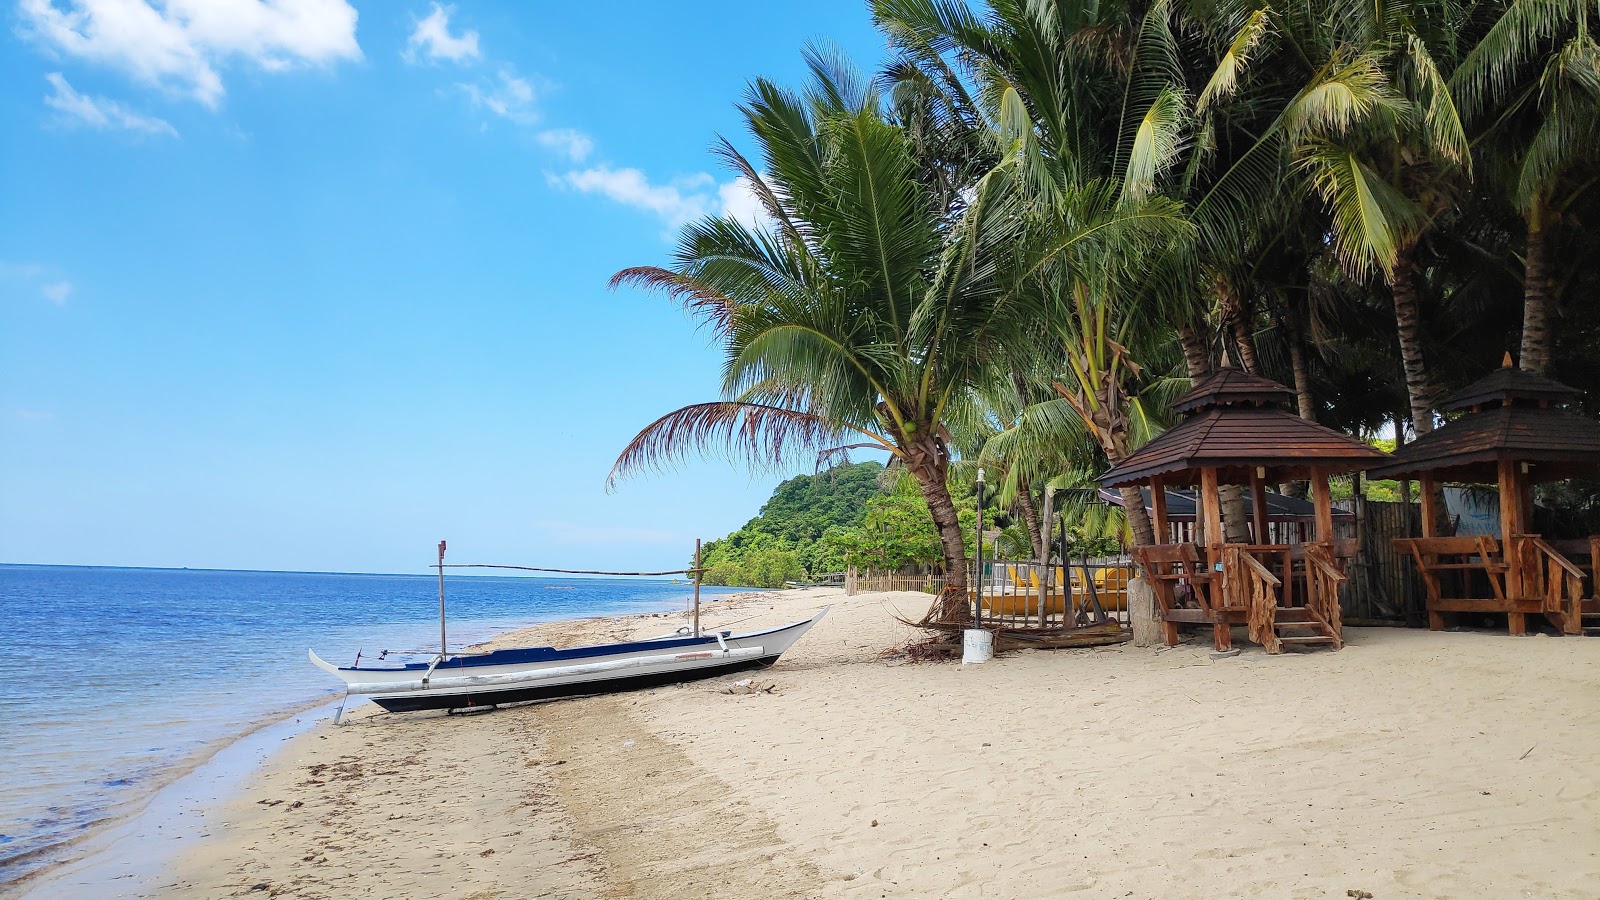 Foto von Lian batangas beach - beliebter Ort unter Entspannungskennern